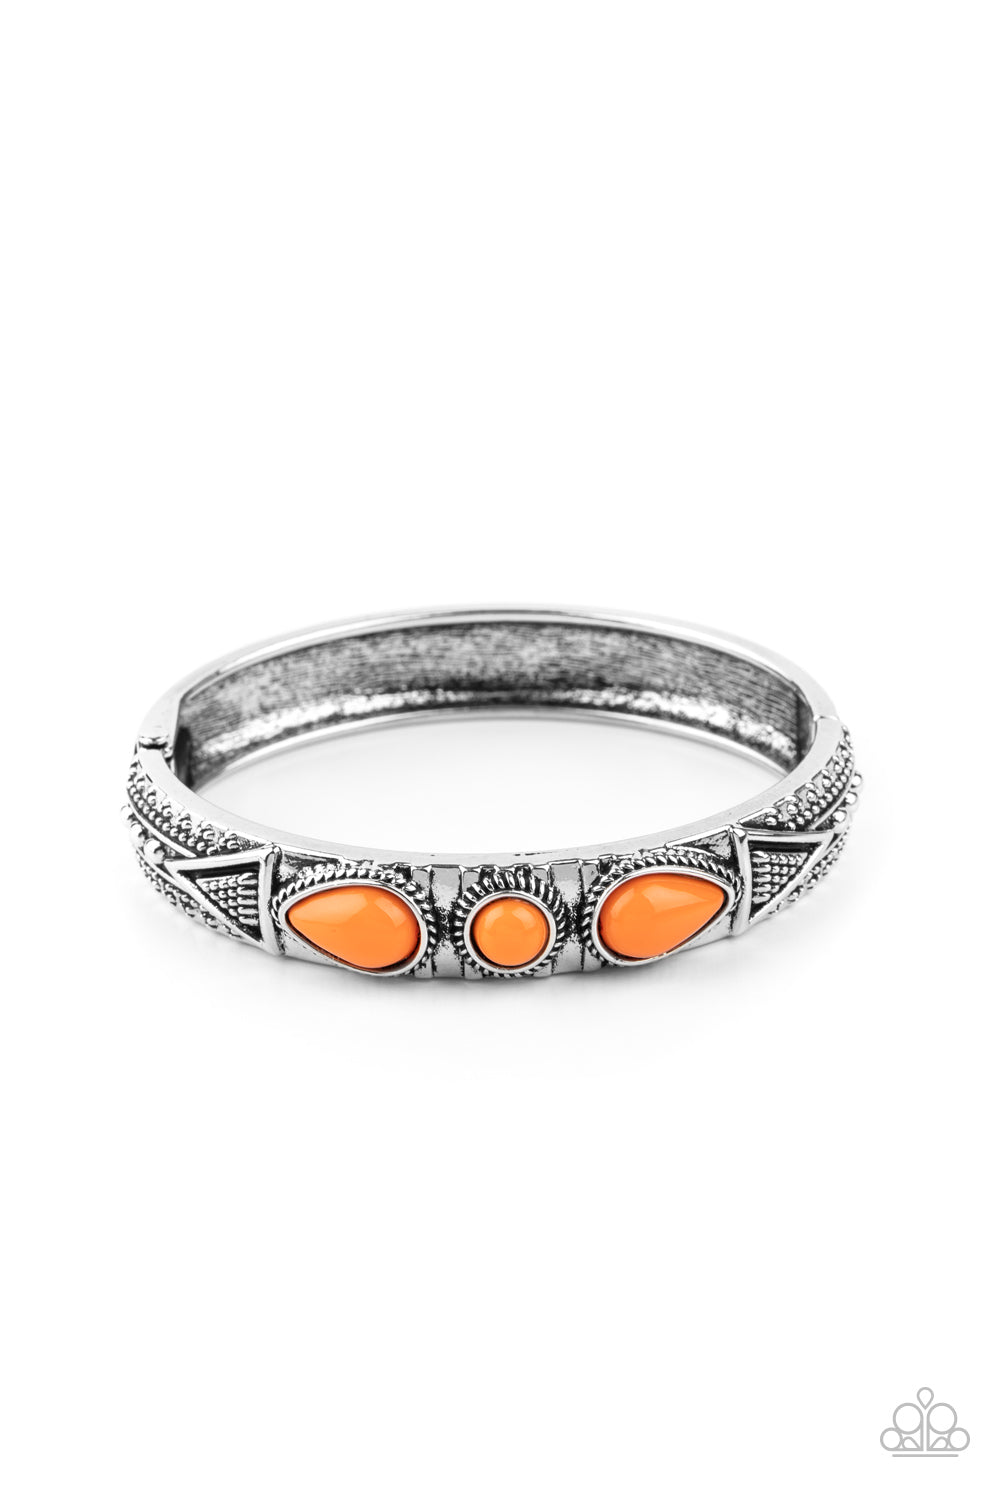 Radiant Ruins - orange - Paparazzi bracelet